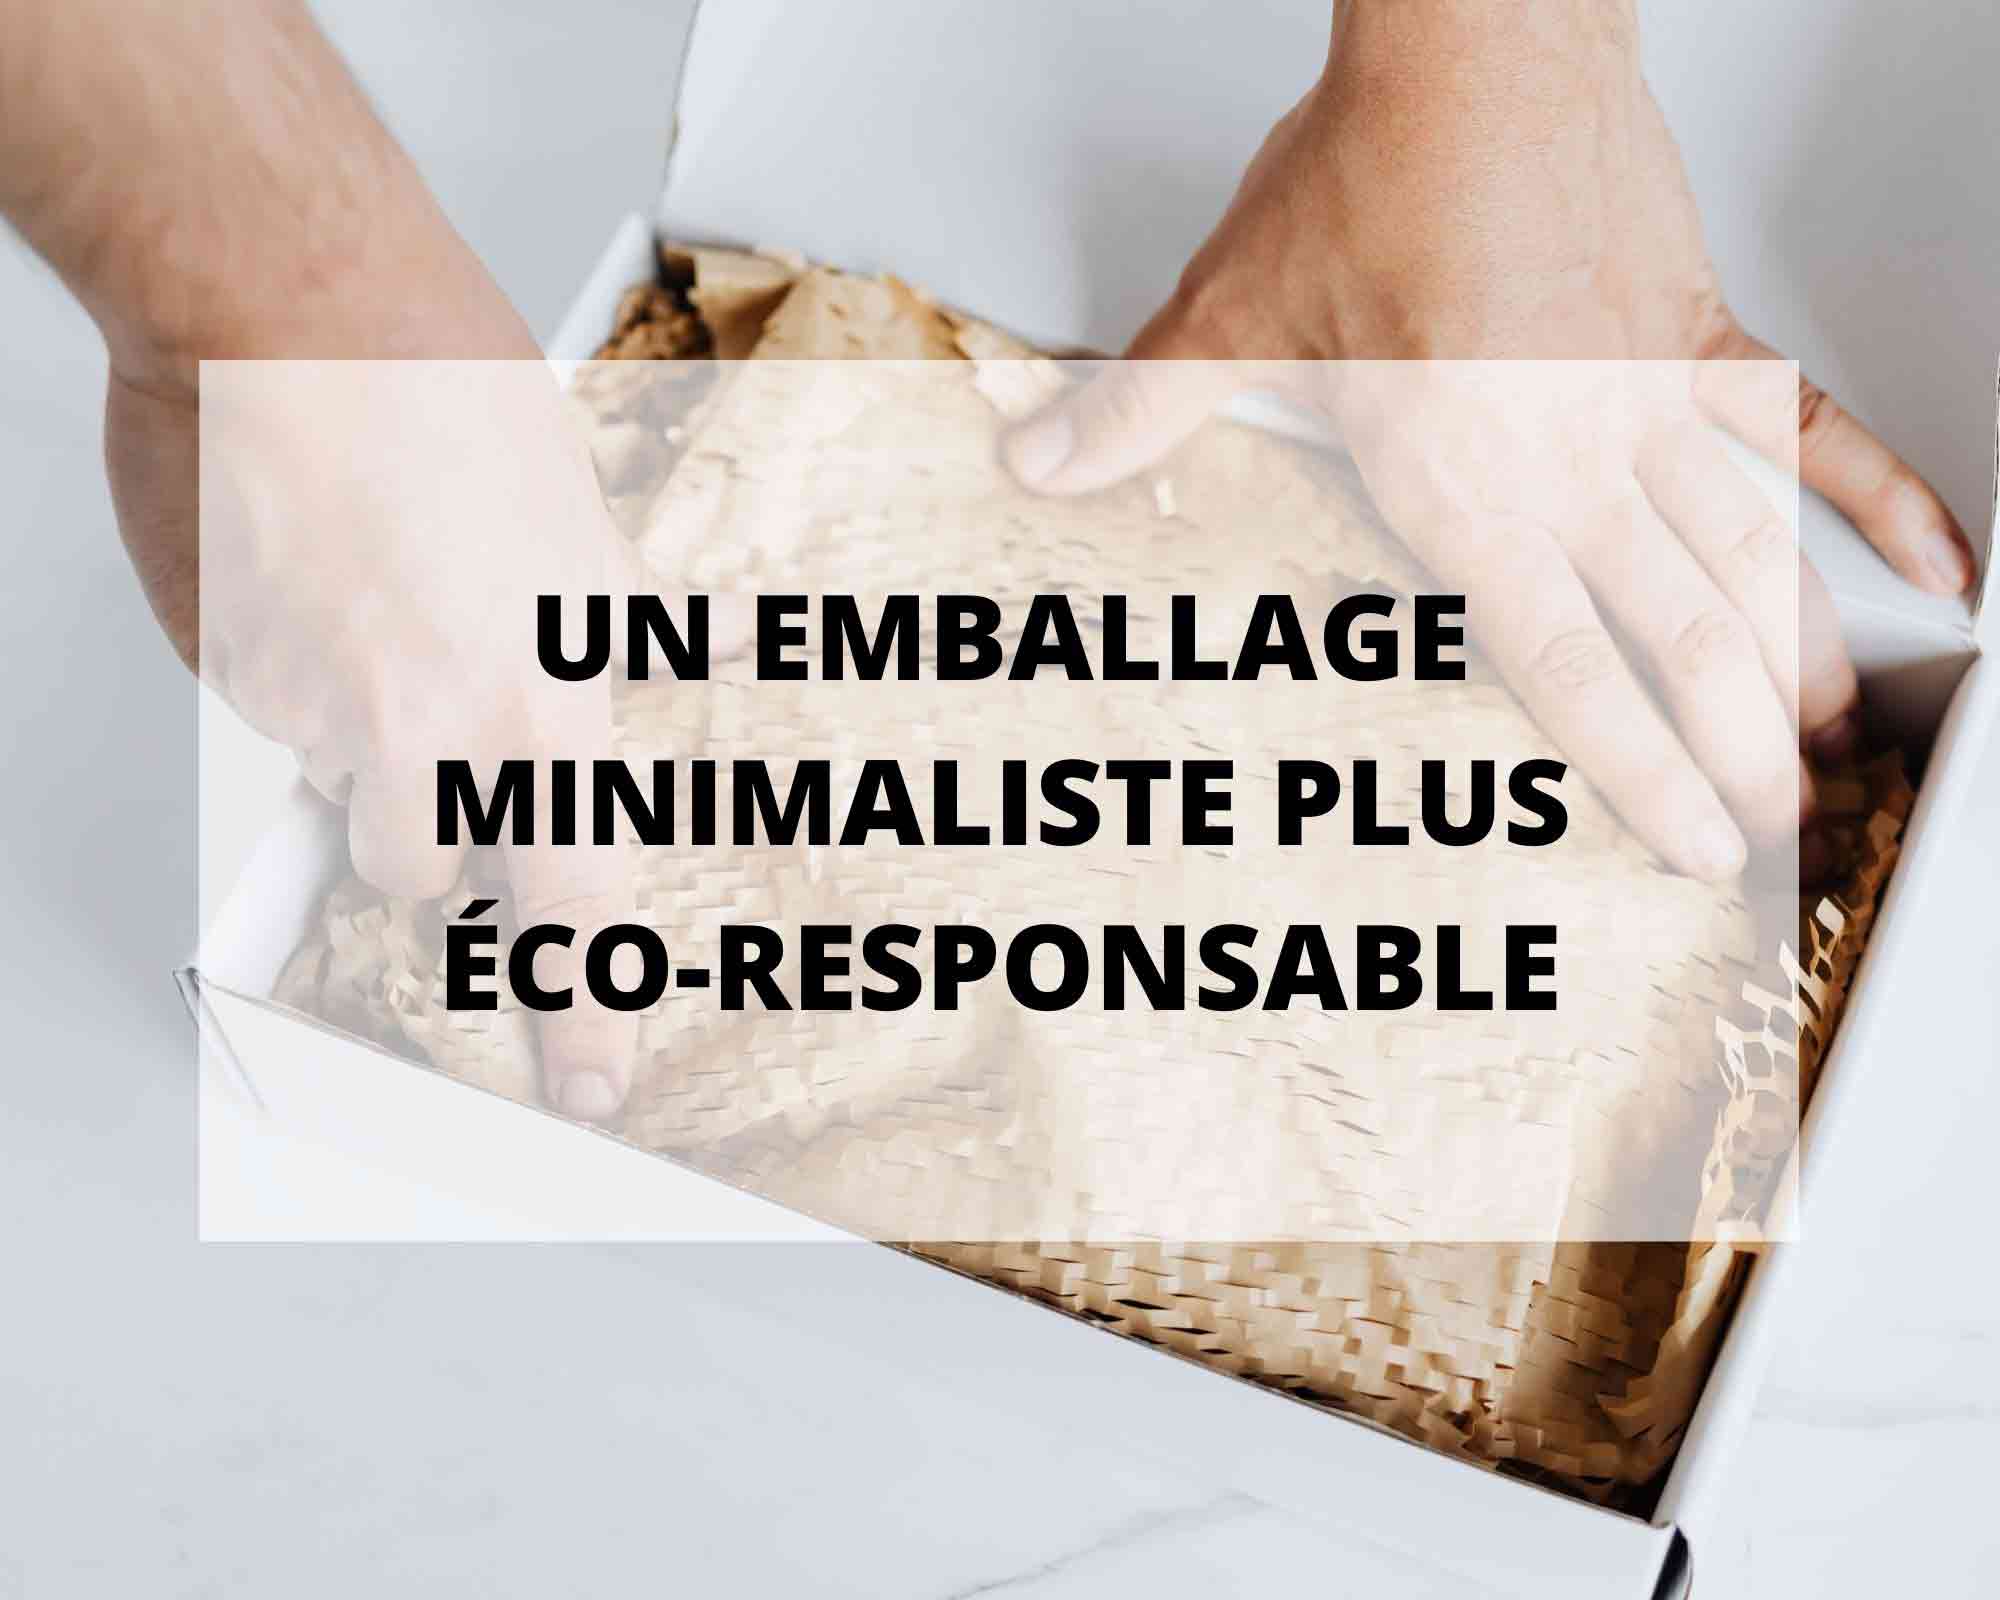 Sans Prétention, lingerie éco-responsable et made in France a choisi un emballage minimaliste plus éco-responsable